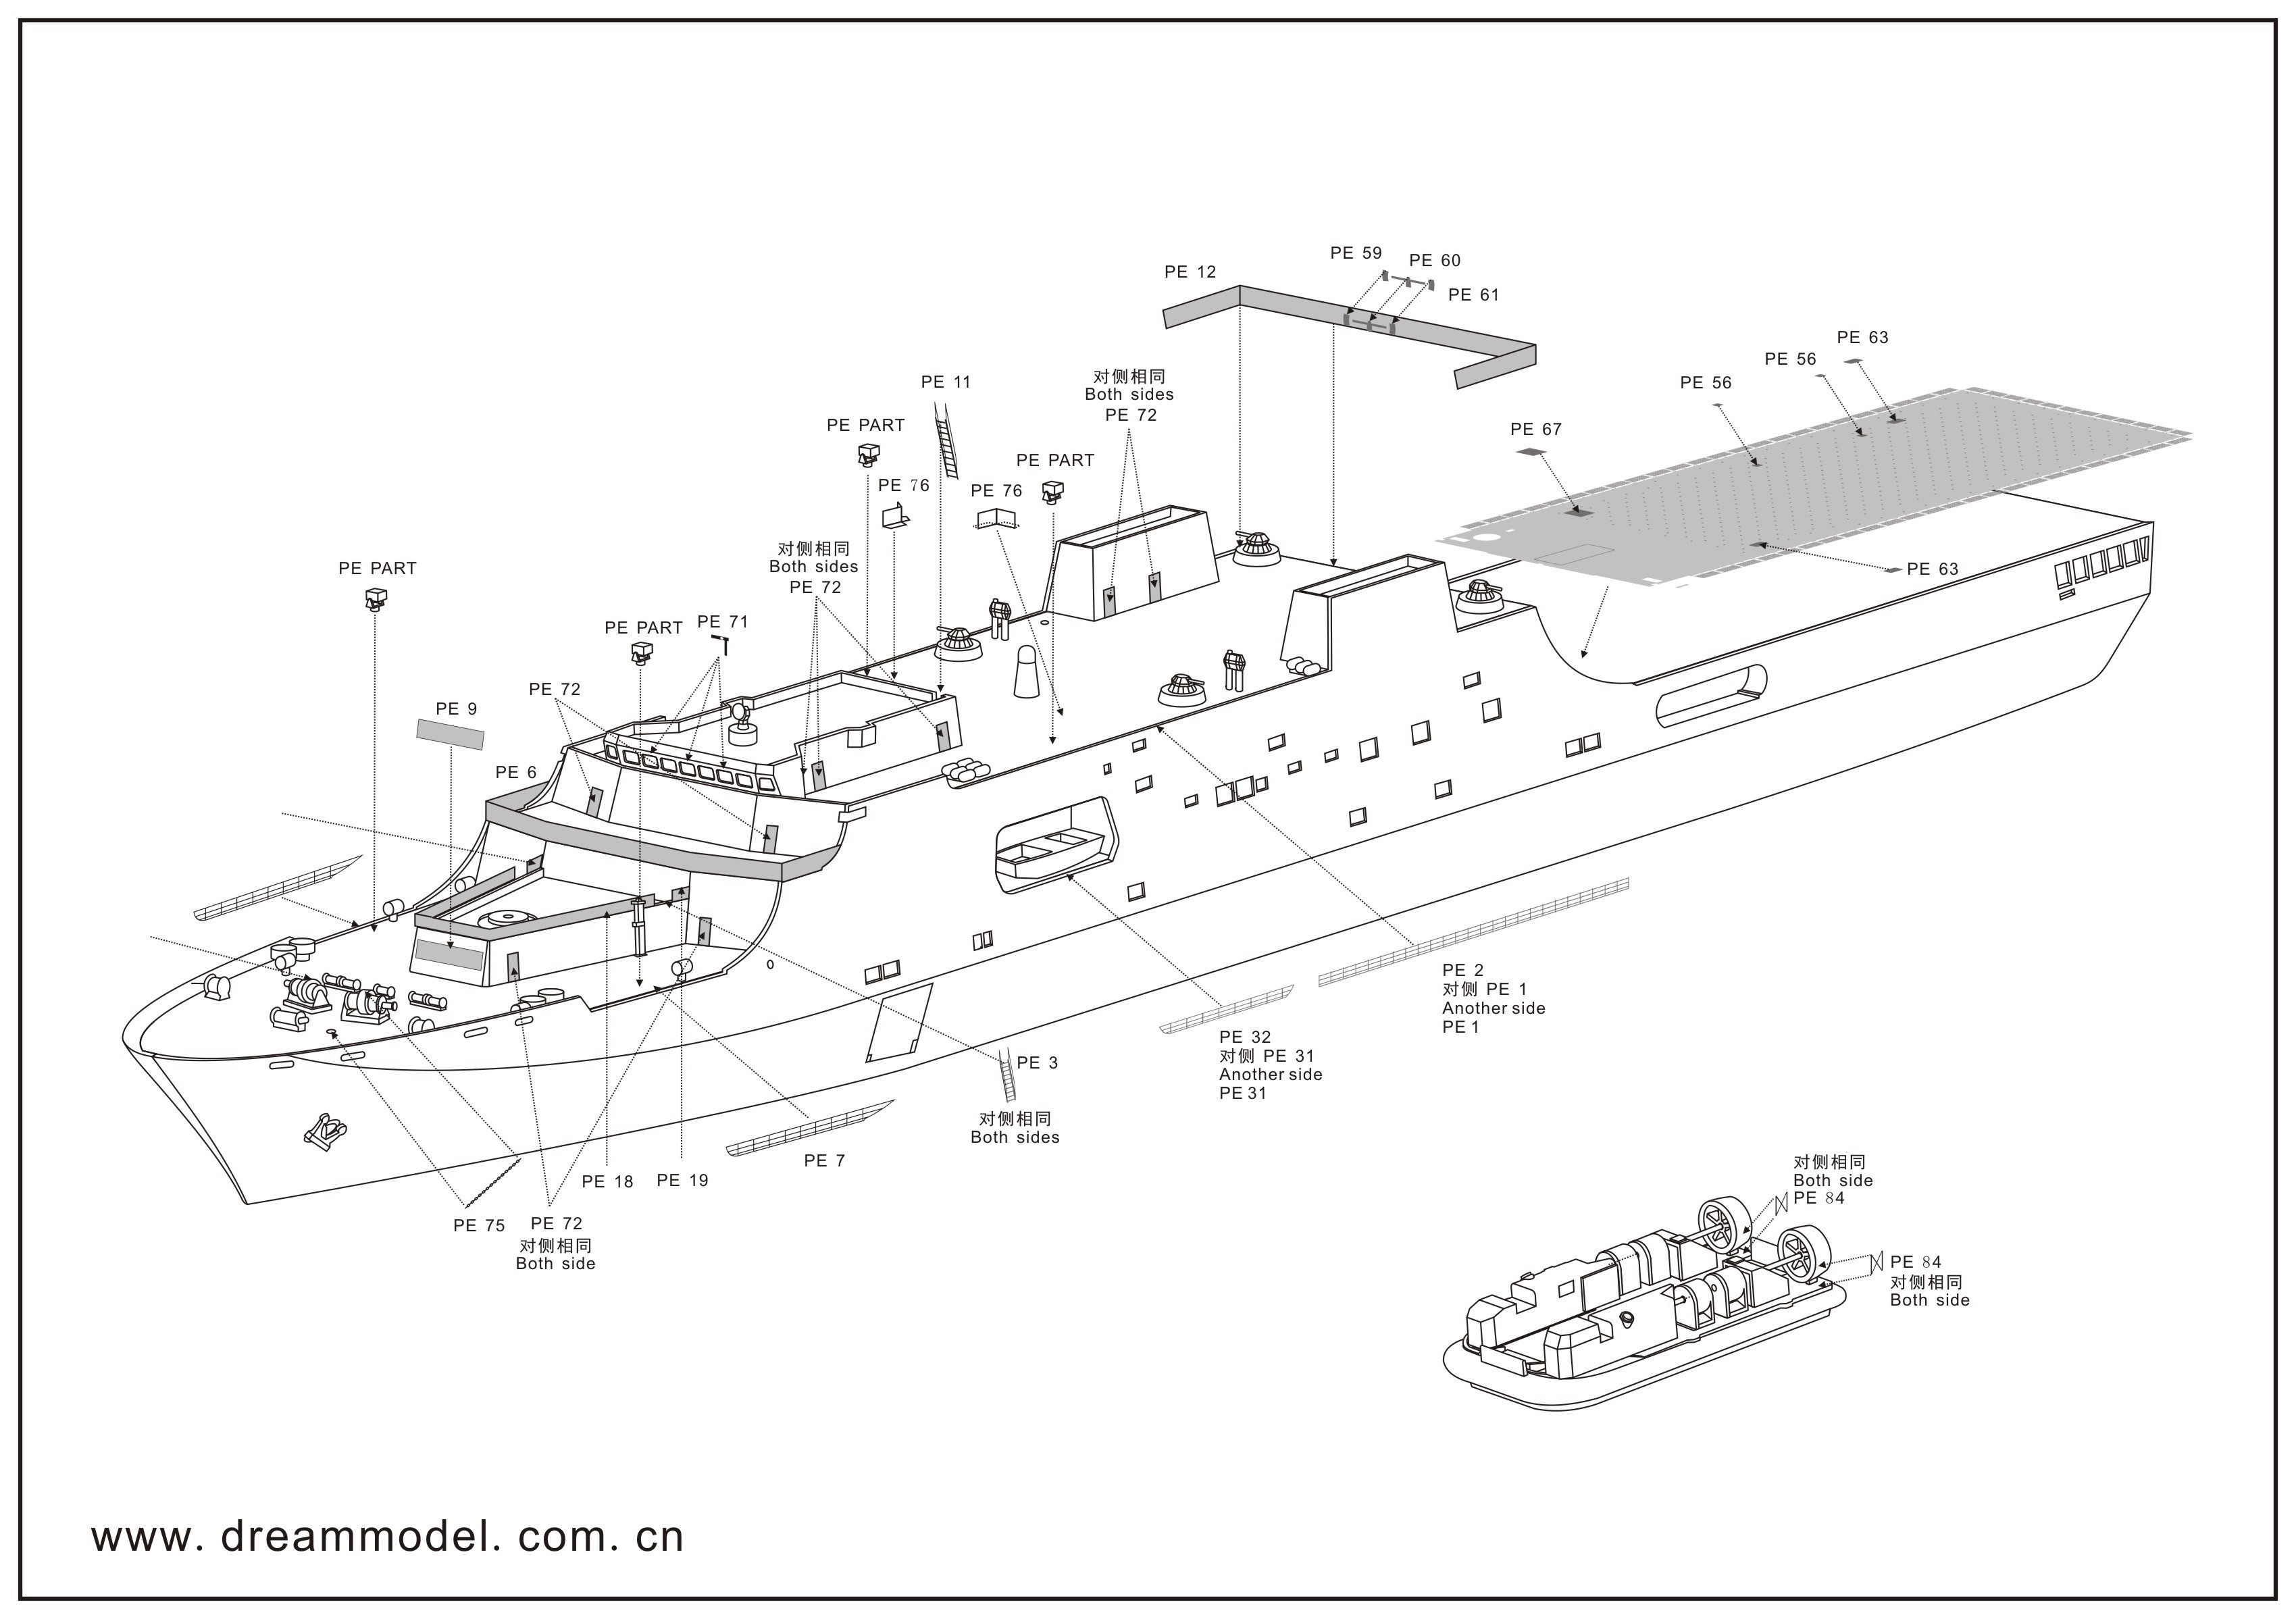 1/700 现代中国海军071/071A型两栖船坞登陆舰改造蚀刻片